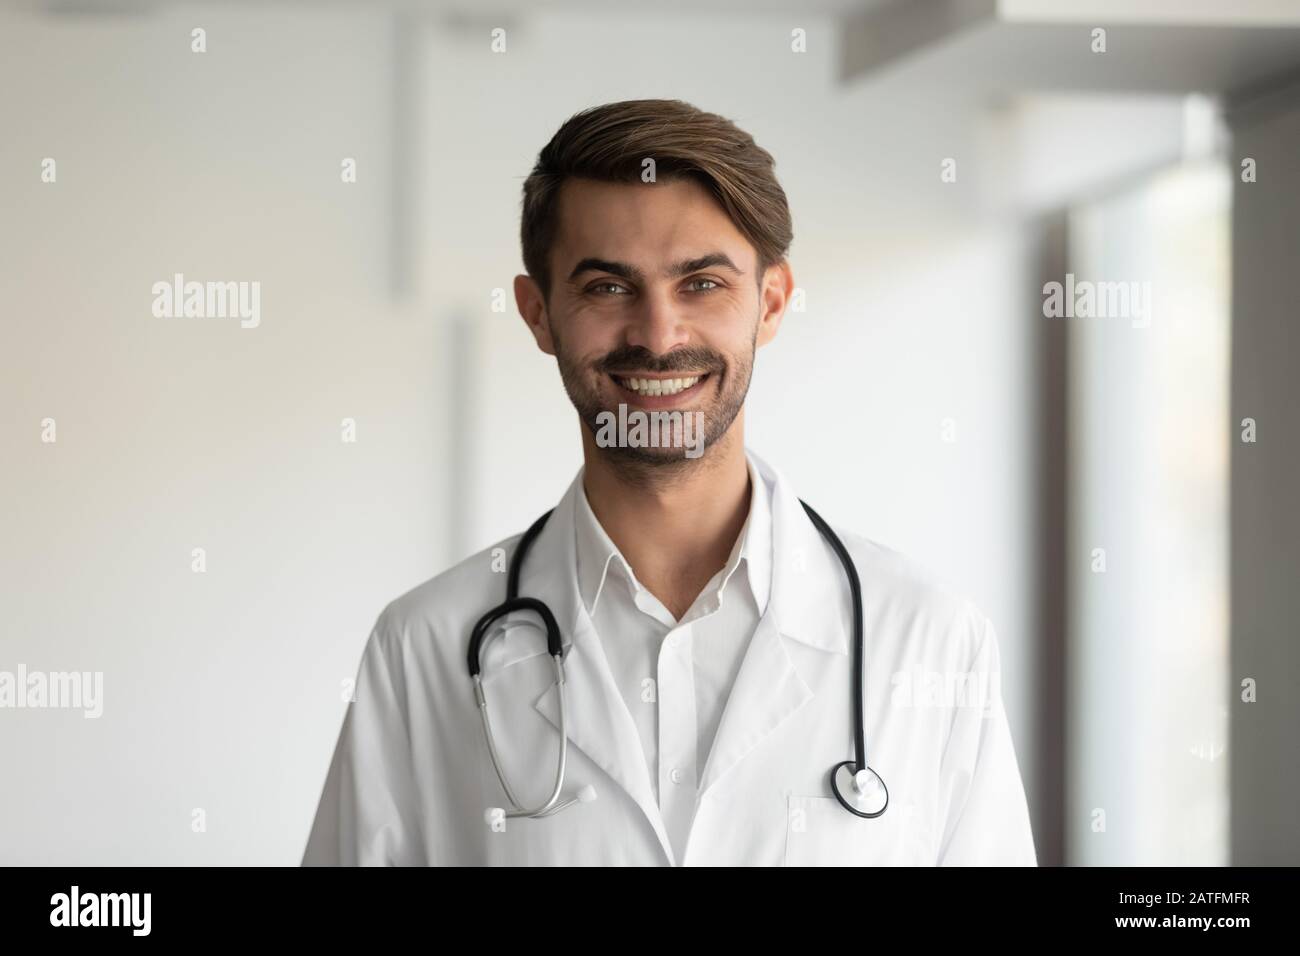 Kopfschuss Porträt lächelnder Arzt mit Uniform mit Stethoskop am Hals Stockfoto